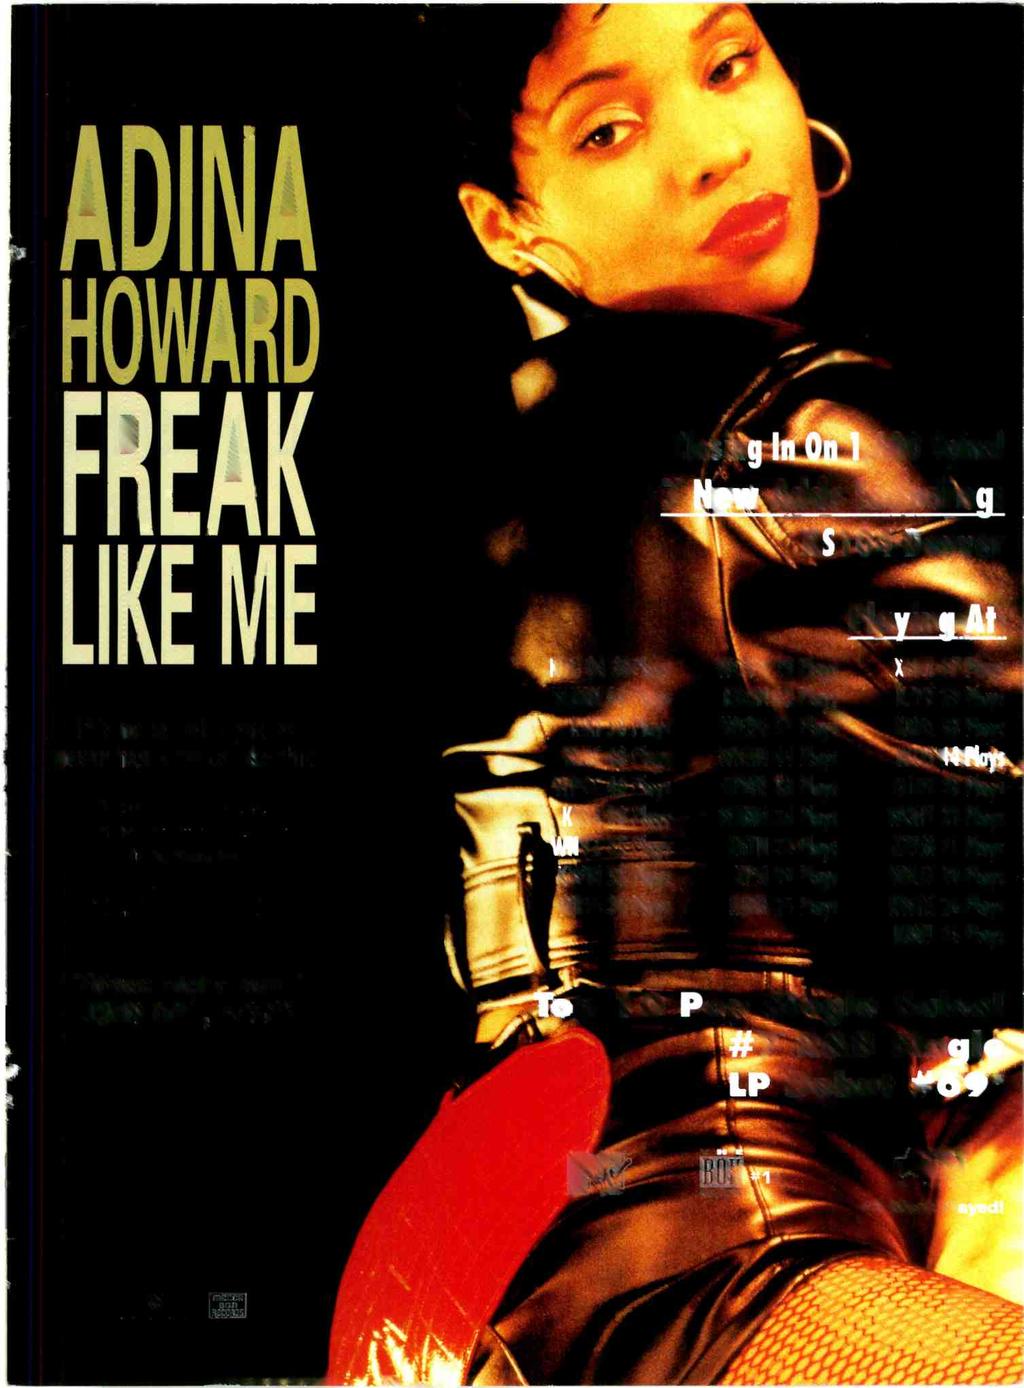 ADINA HOWARD FREAK 0 Spins!